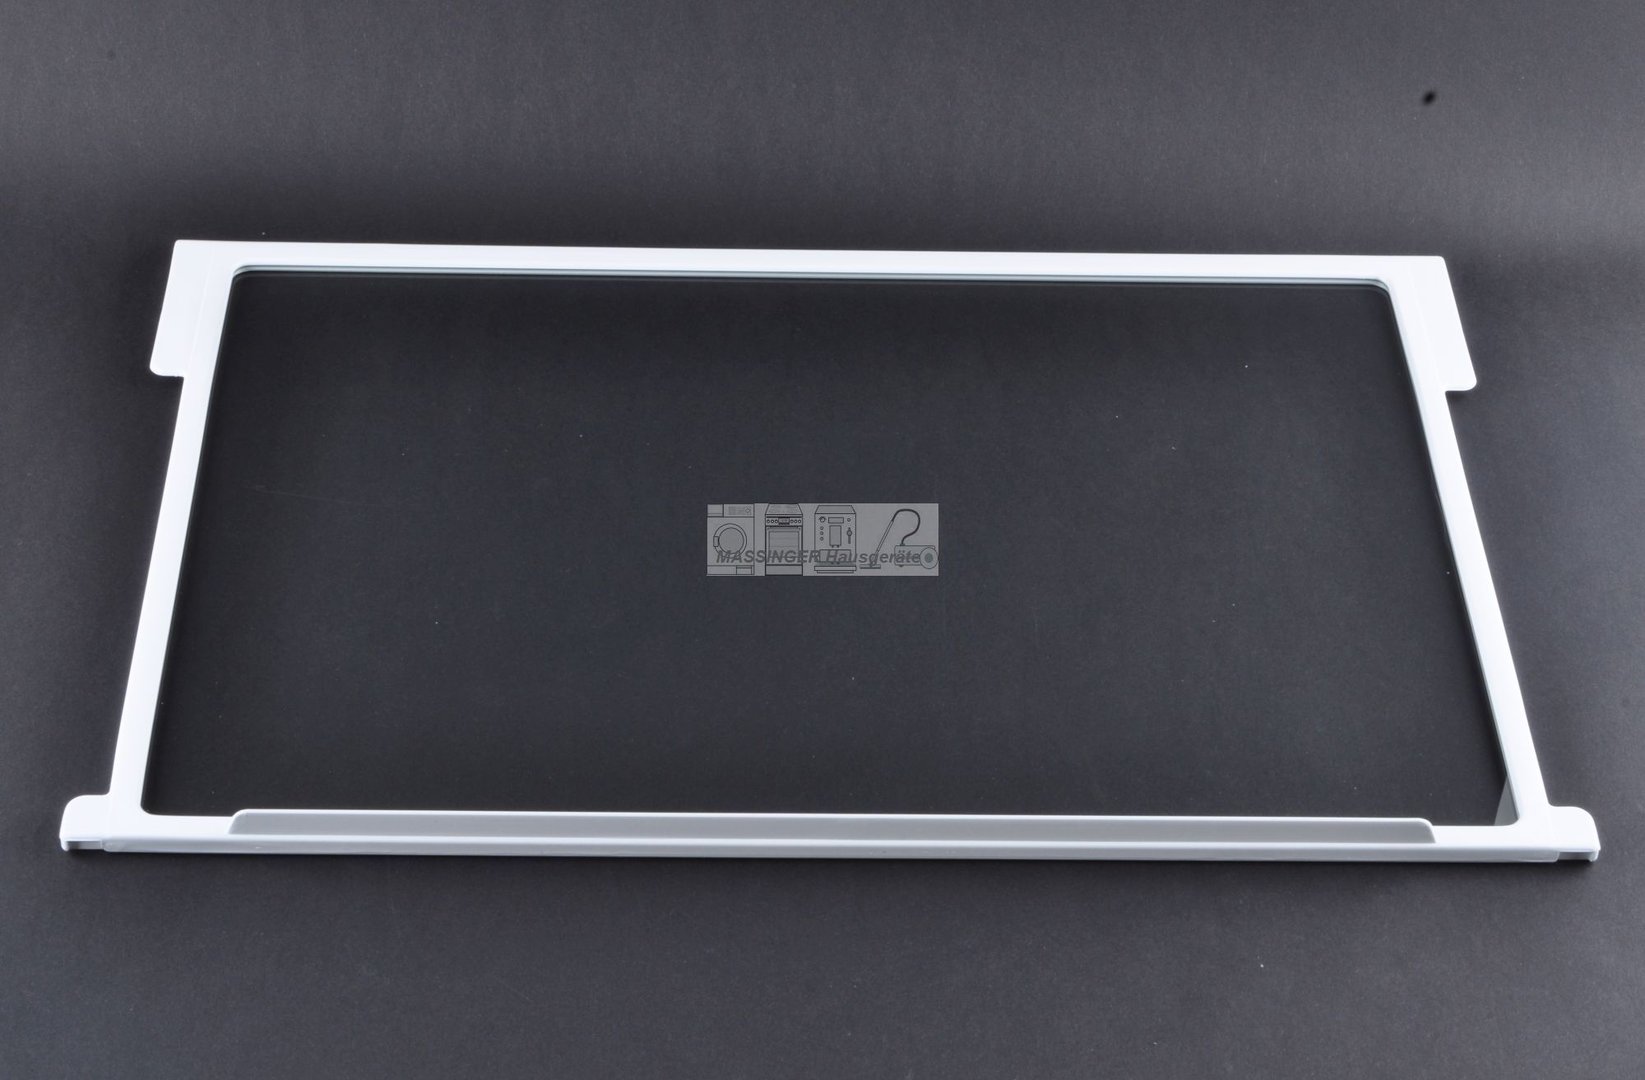 Gorenje Privileg Glasscheibe 43 x 20 cm  Glasplatte für Kühlschrank 